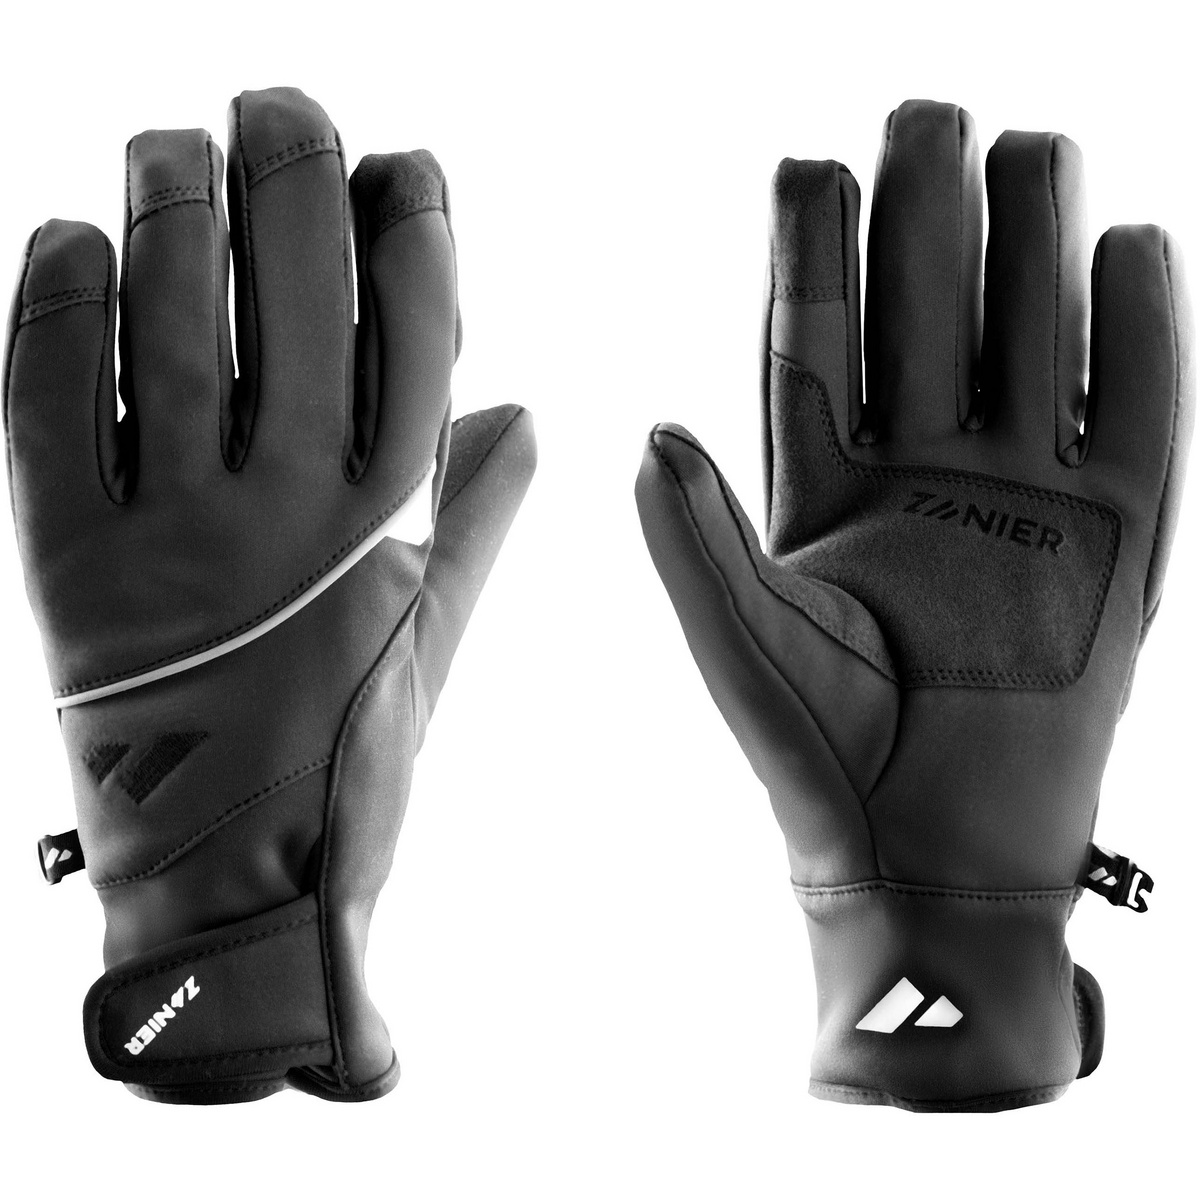 Zanier Gloves Tour Handschuhe von Zanier Gloves